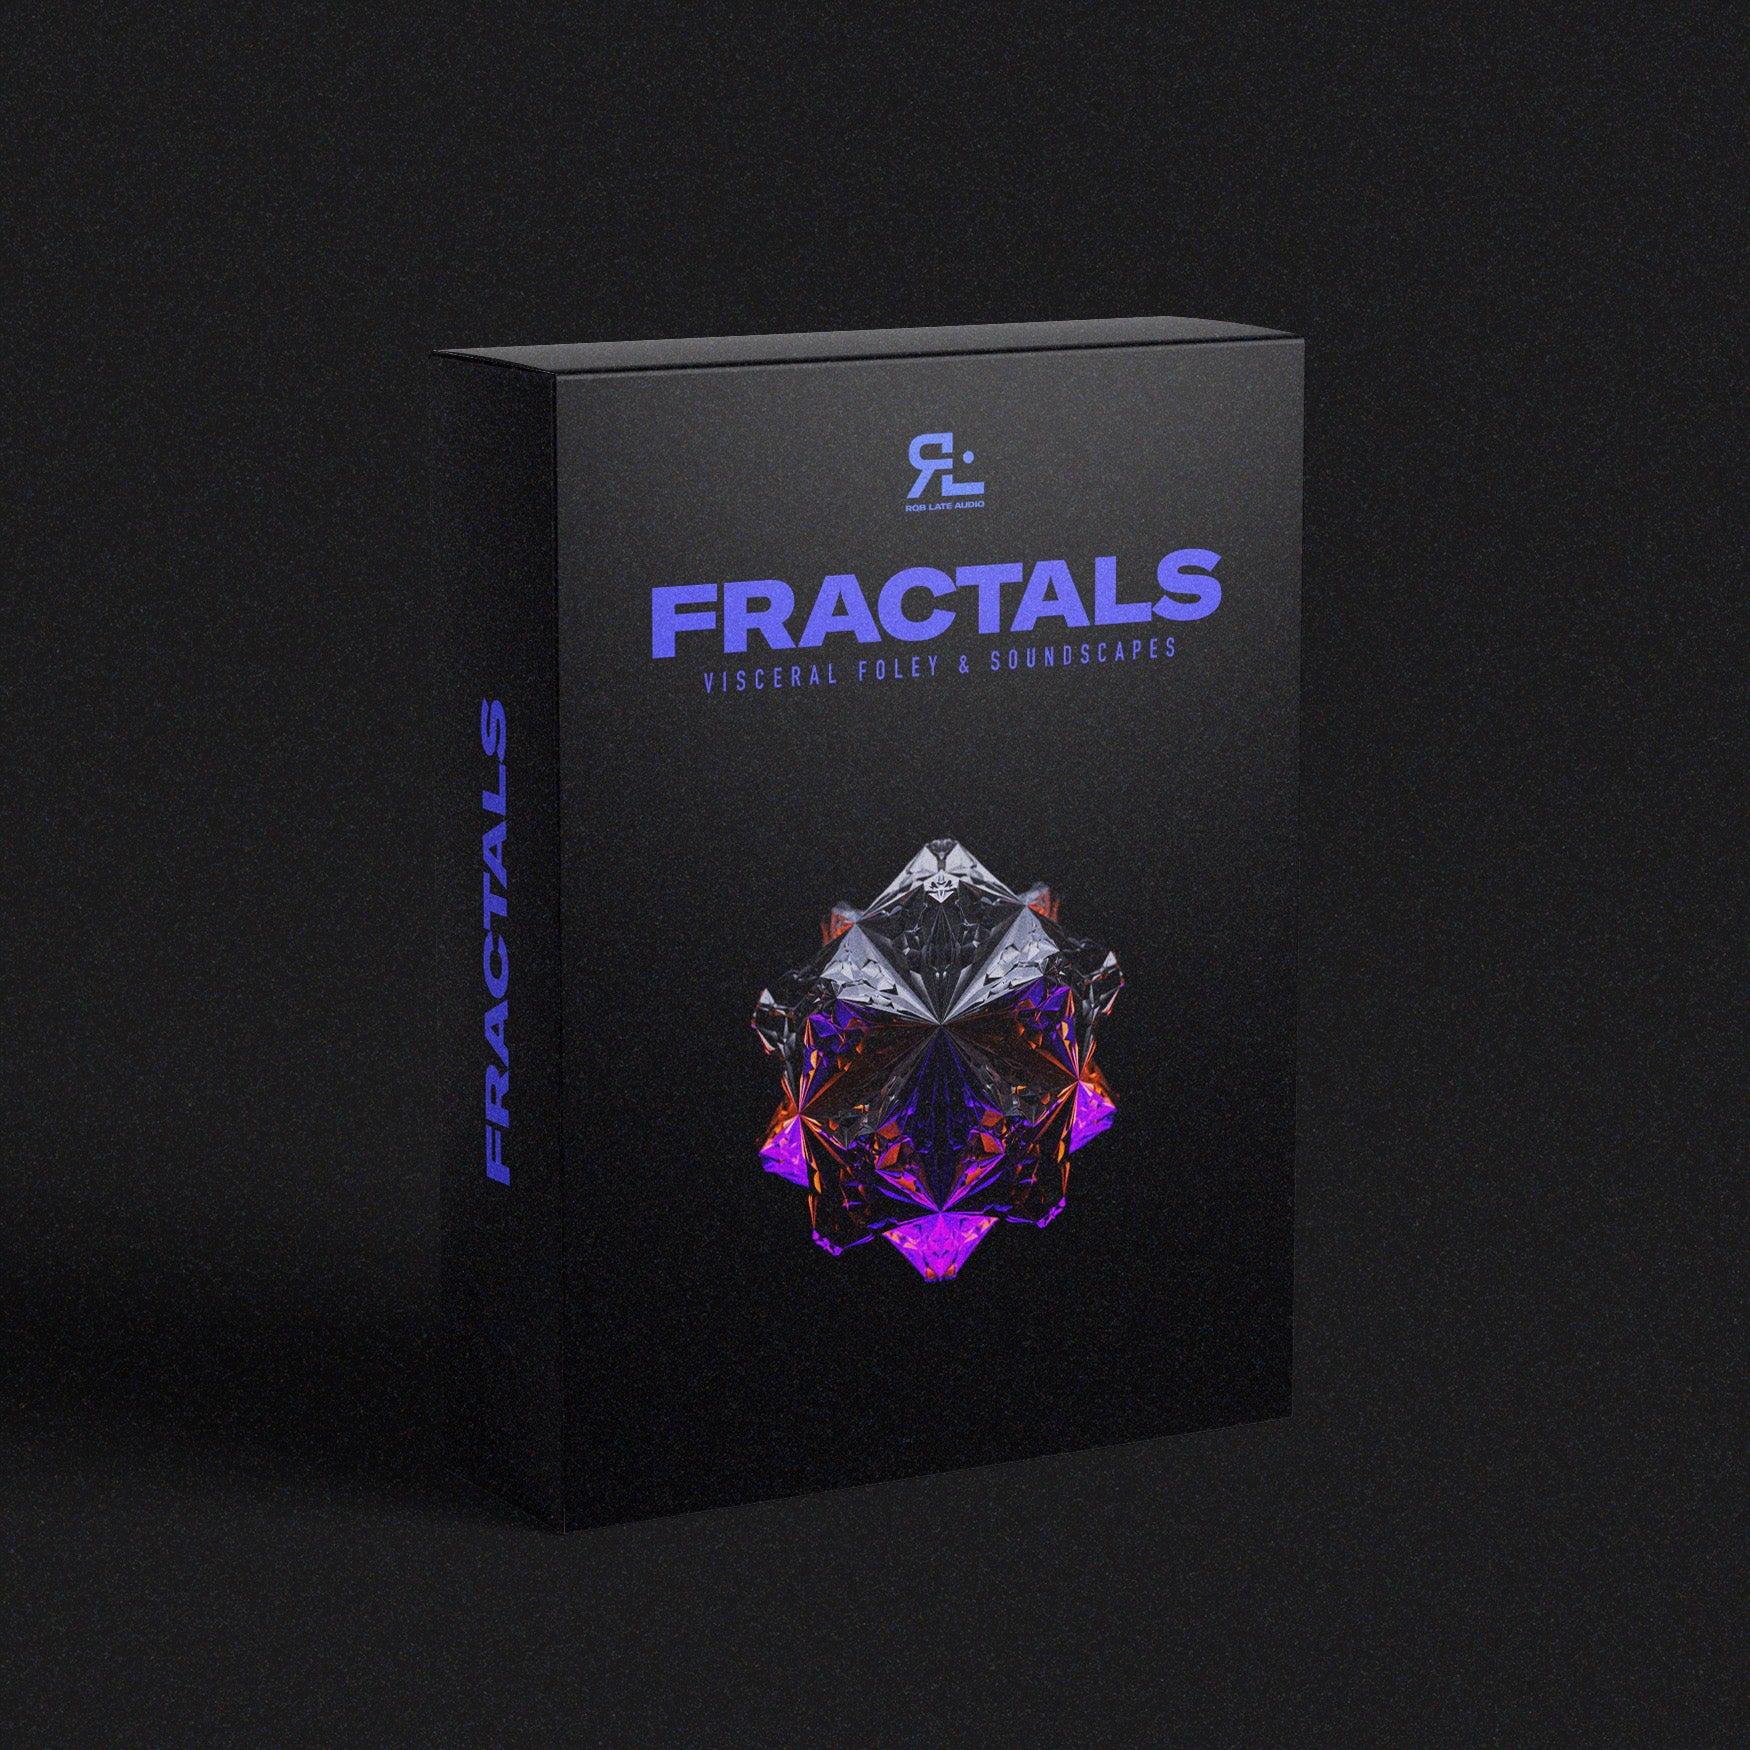 Fractals - Foley & Soundscapes Sample Pack